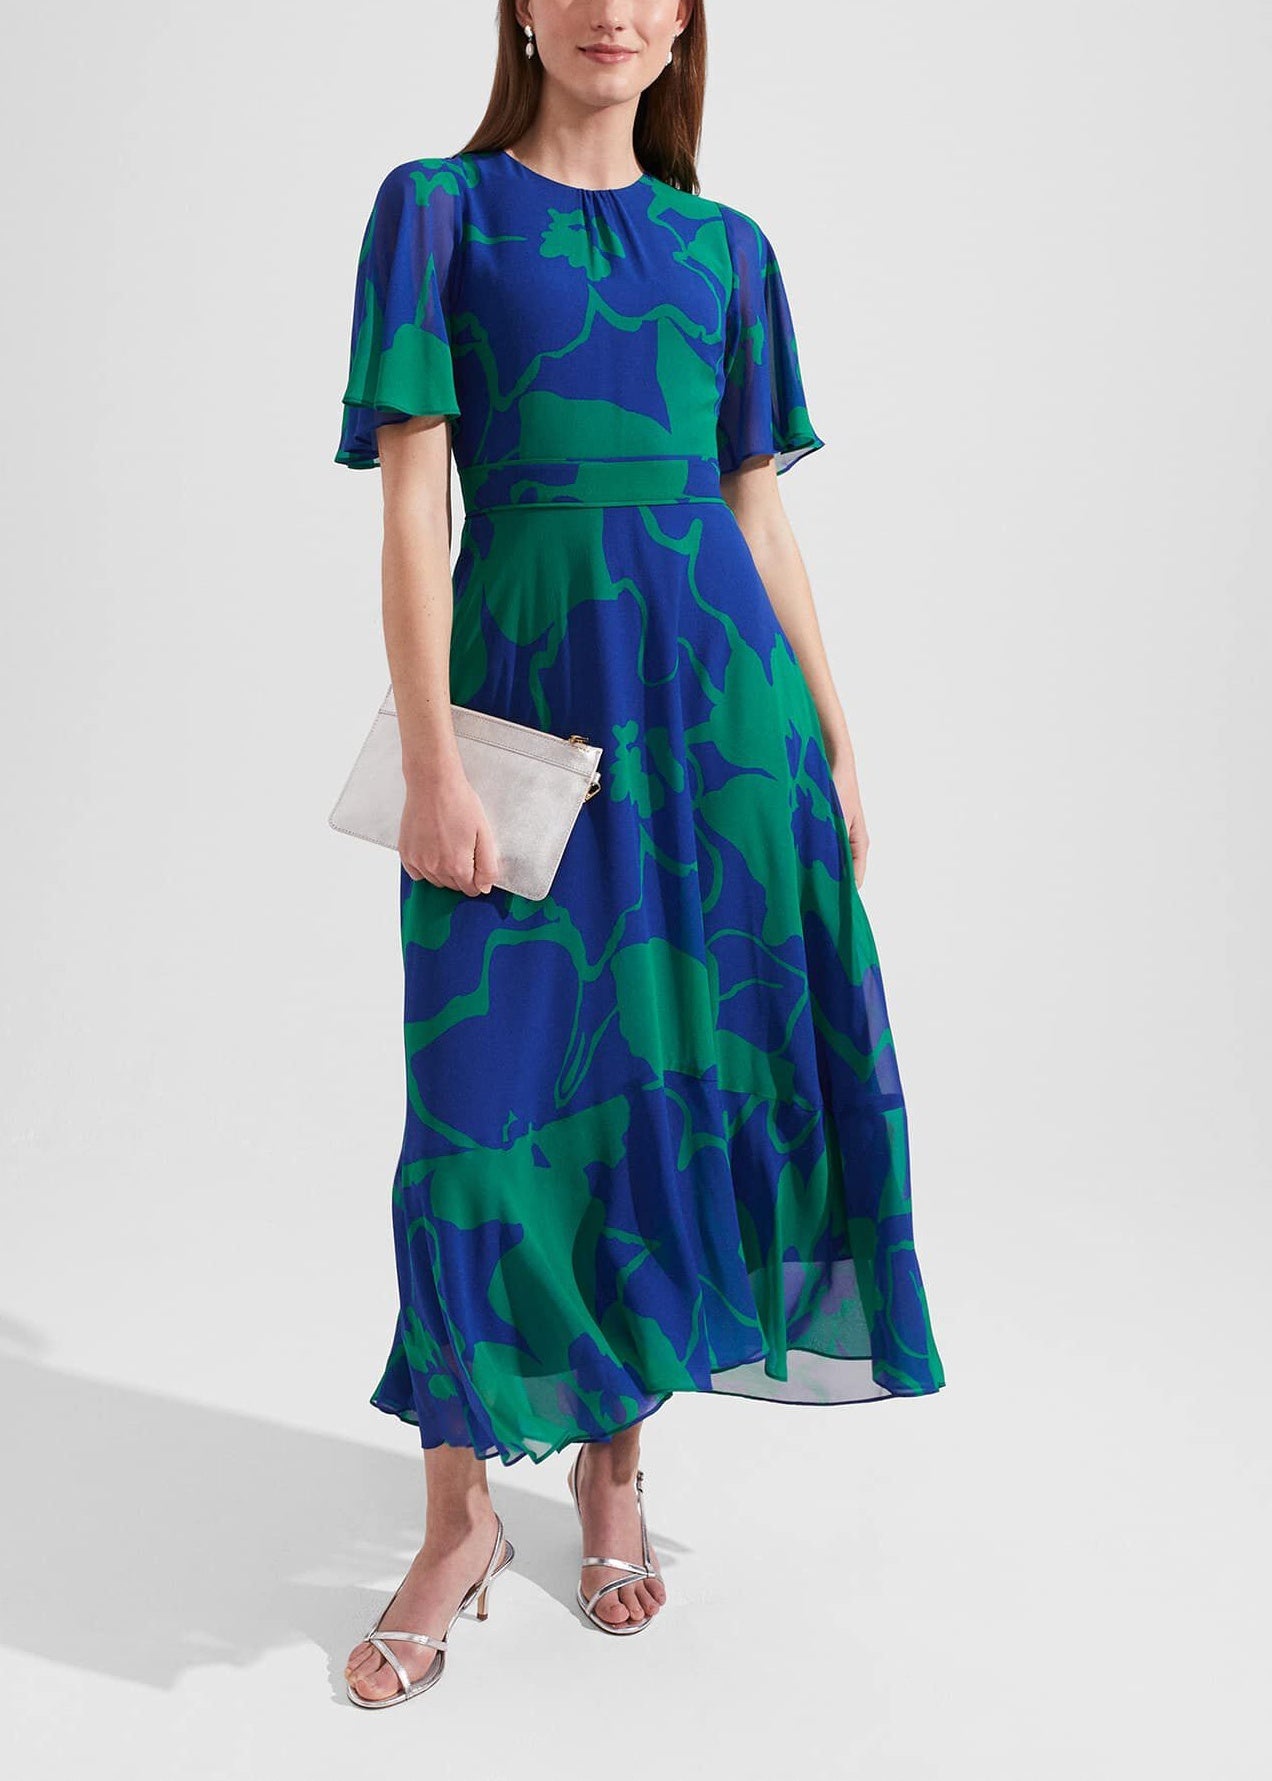 Freya Silk Dress 0223/5815/3793l00 Blue-Green